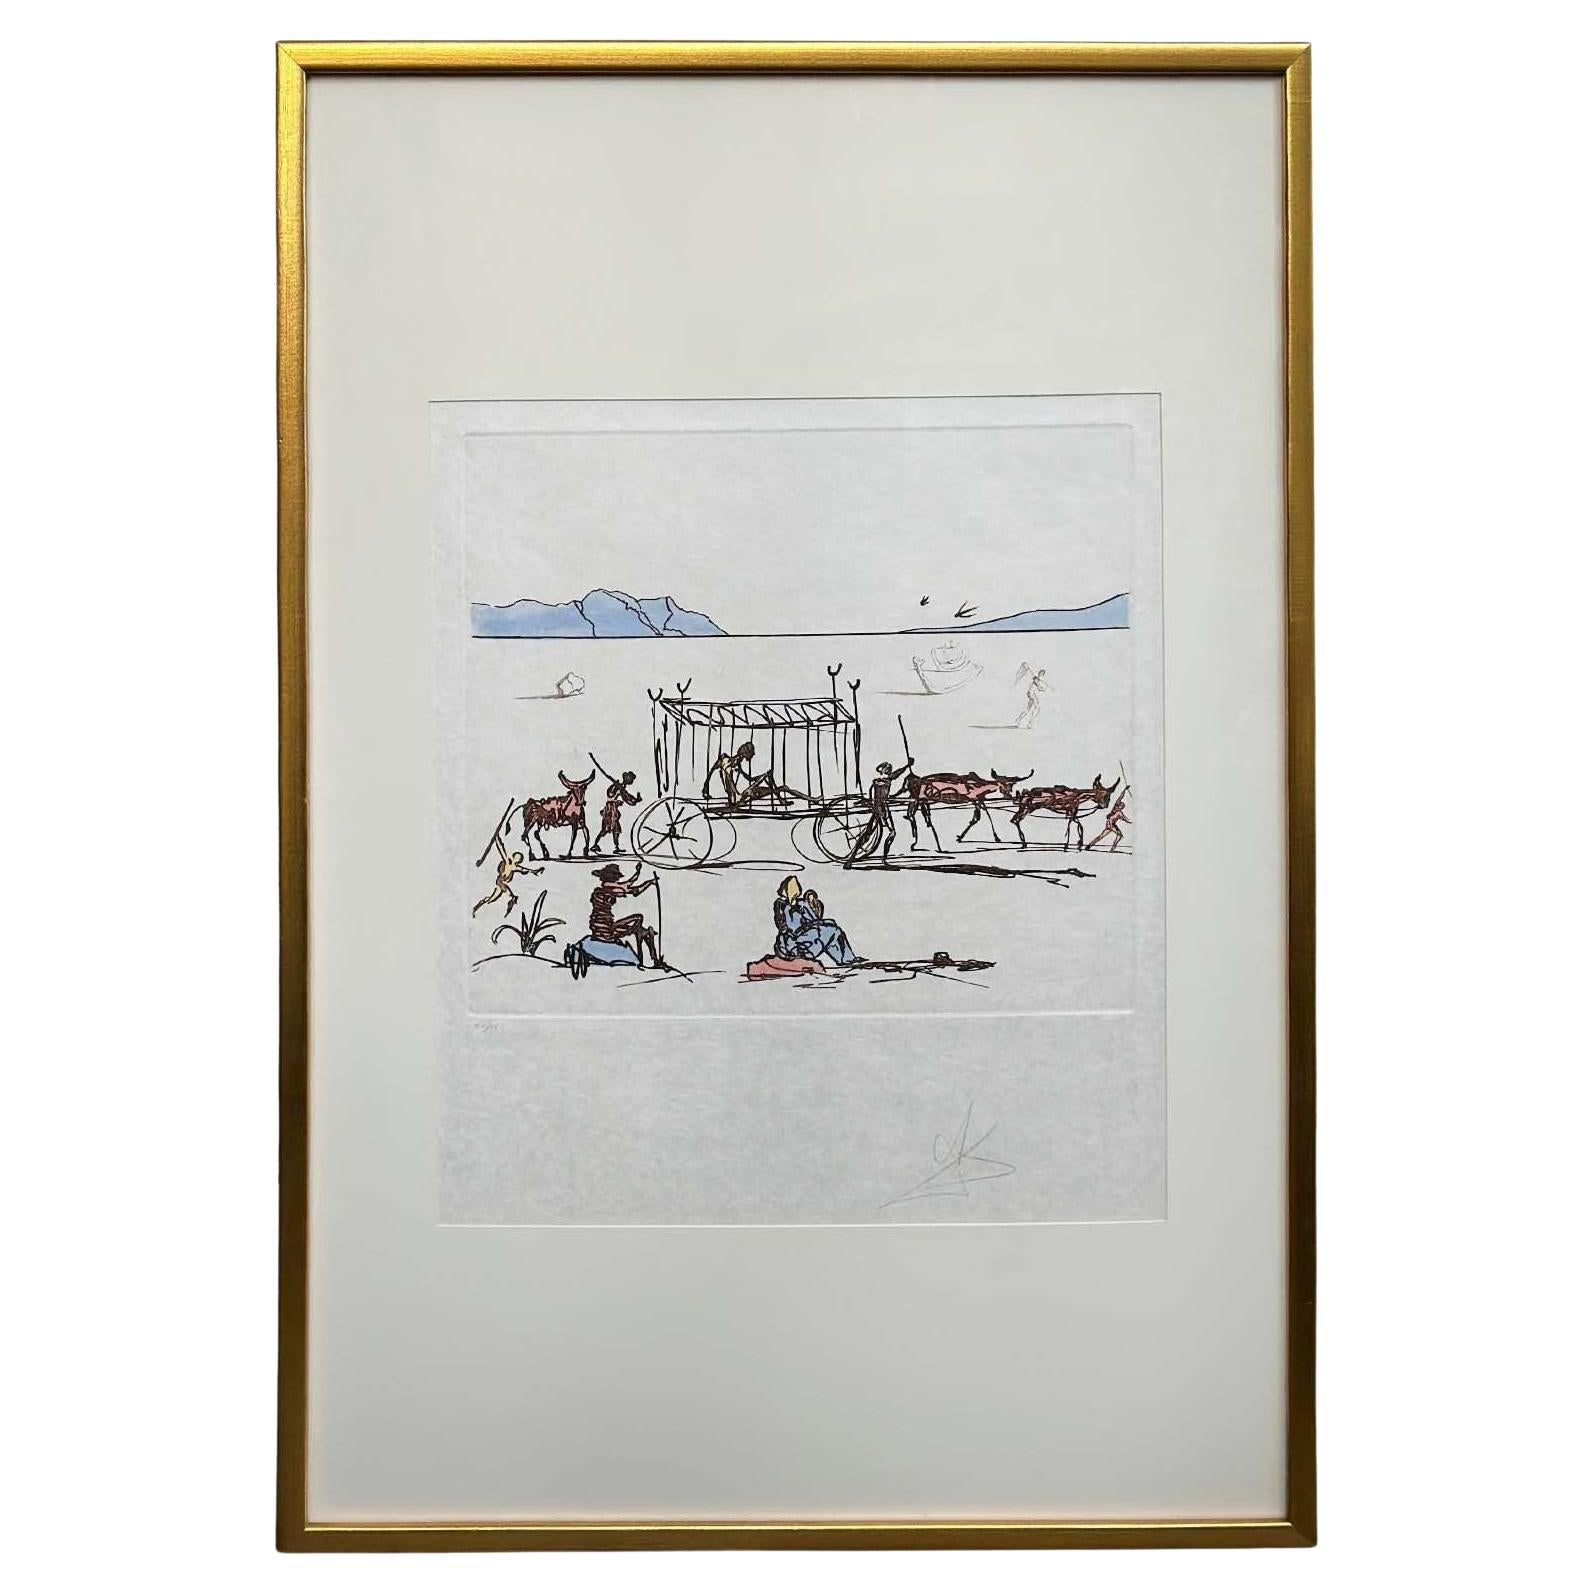 Framed Etching Aquatint "Judgement" by Salvador Dalí For Sale